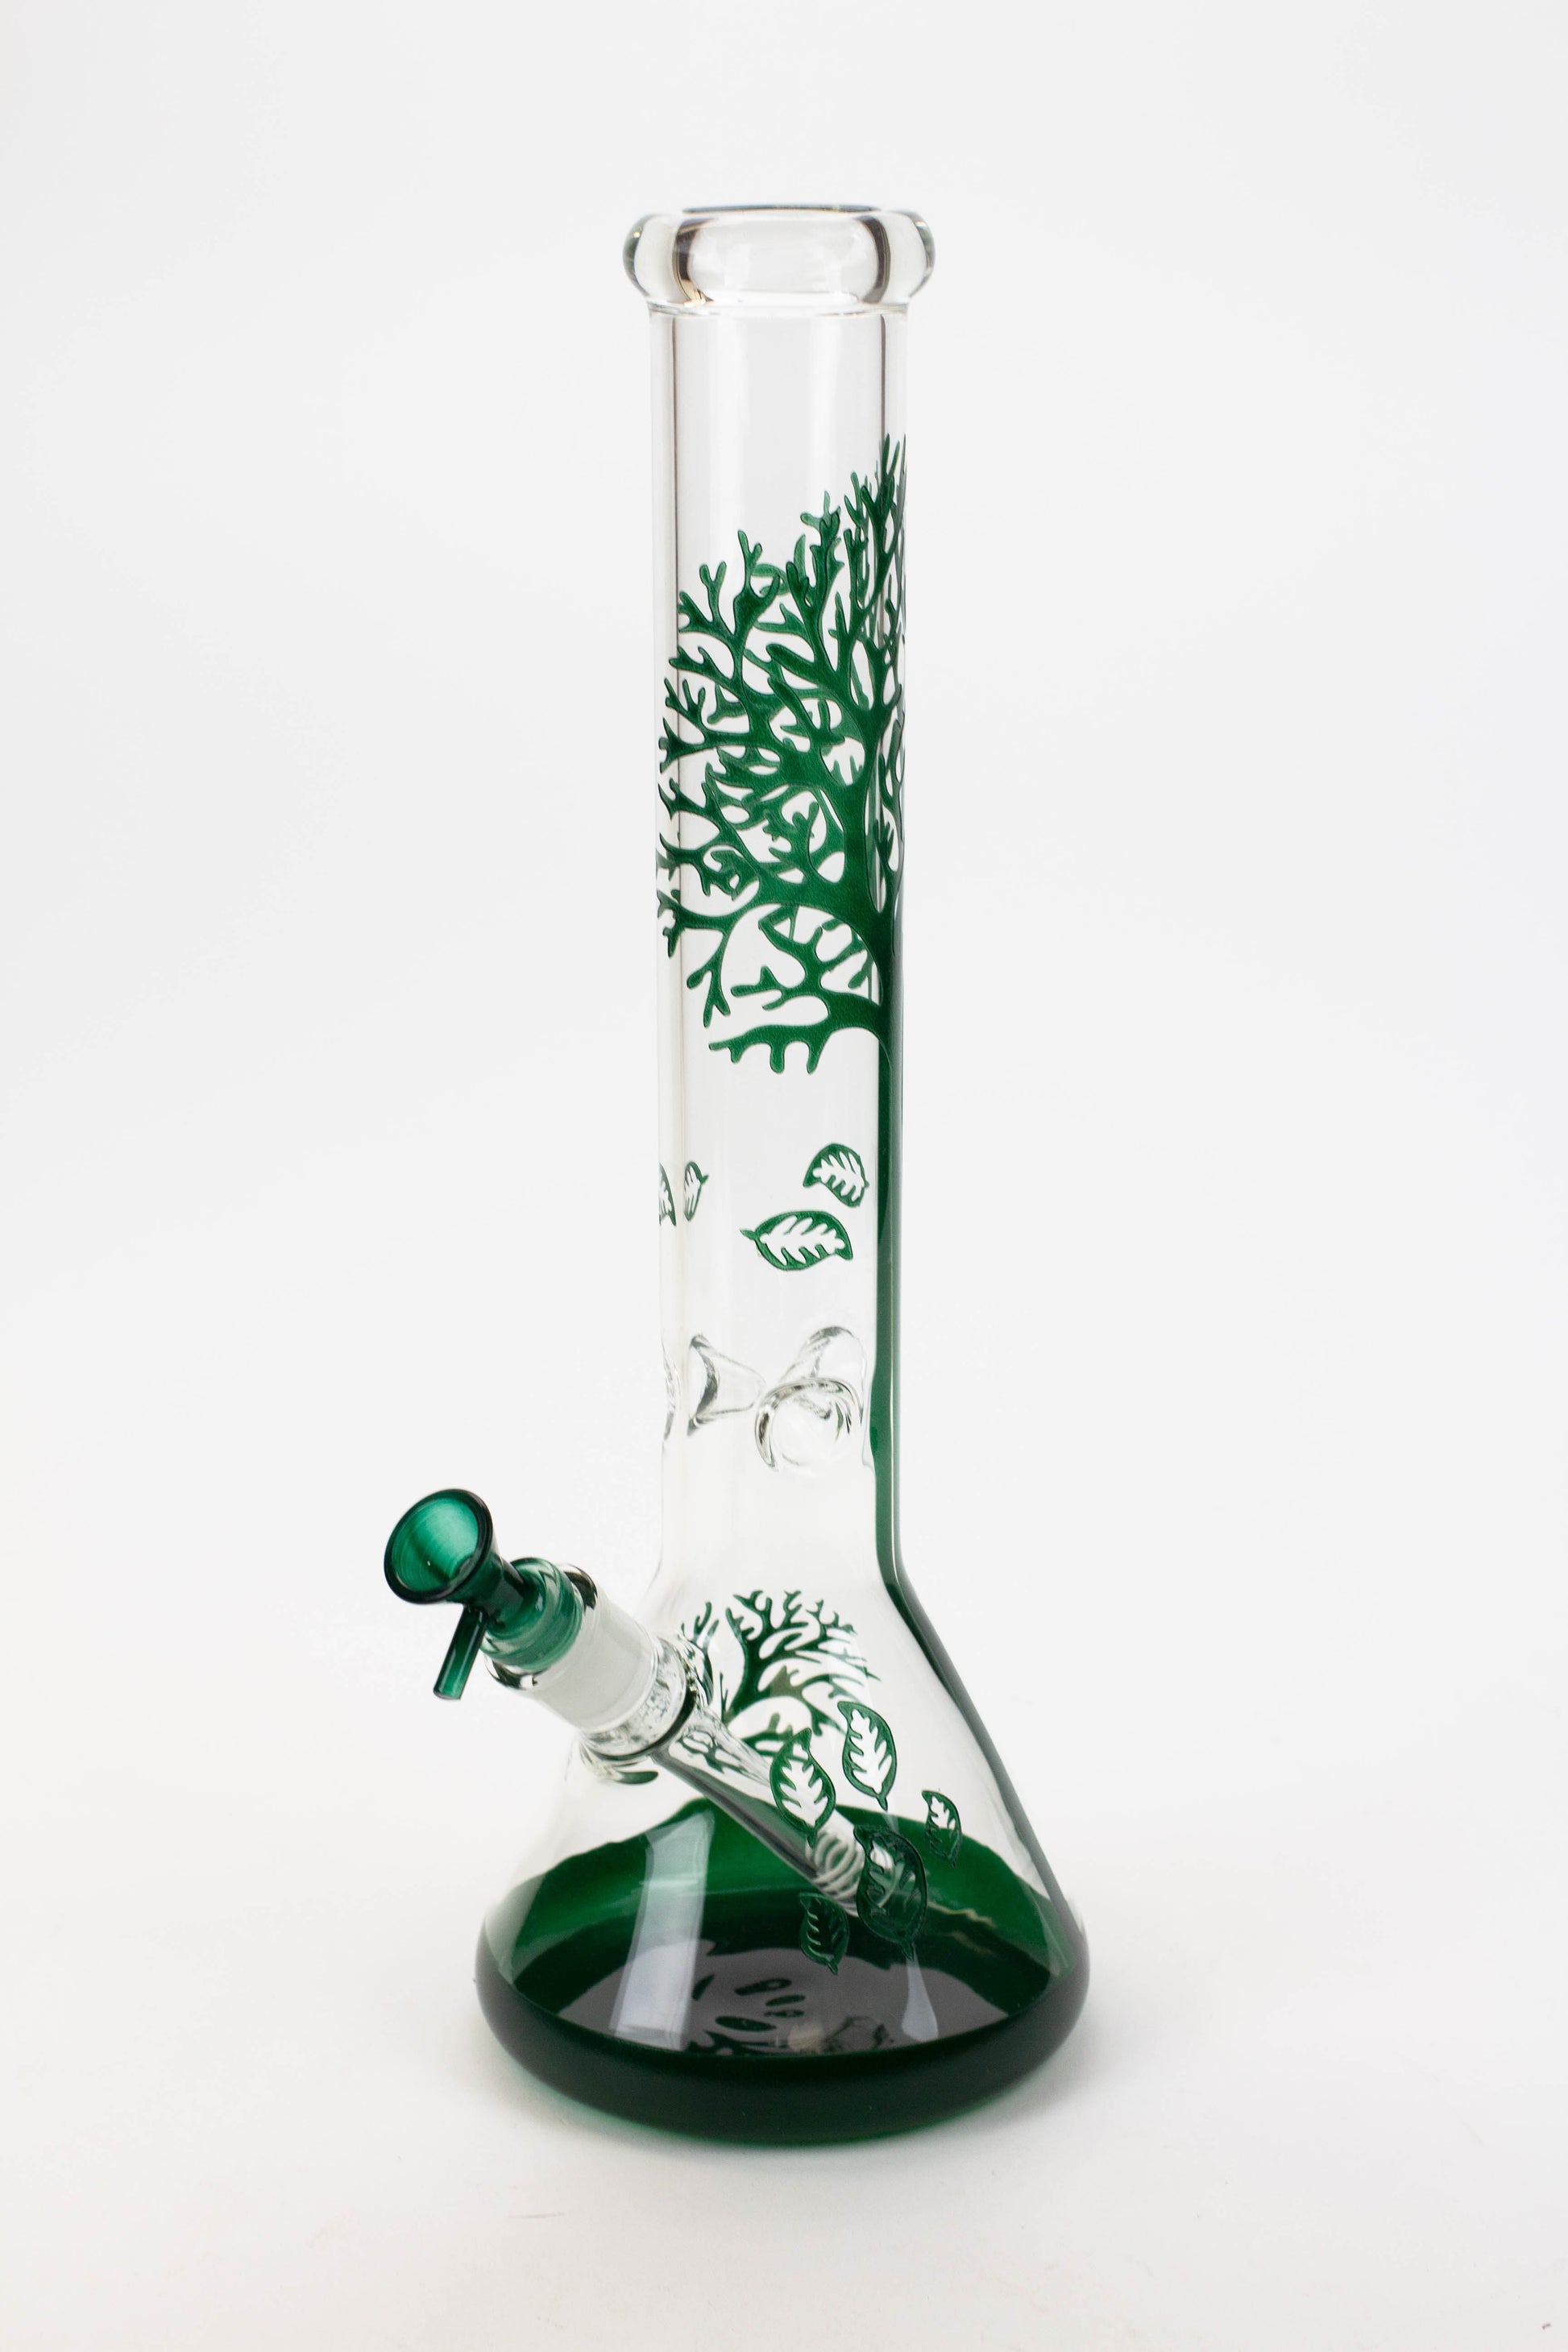 15" Tree of Life classic beaker glass bong Flower Power Packages Black Green 